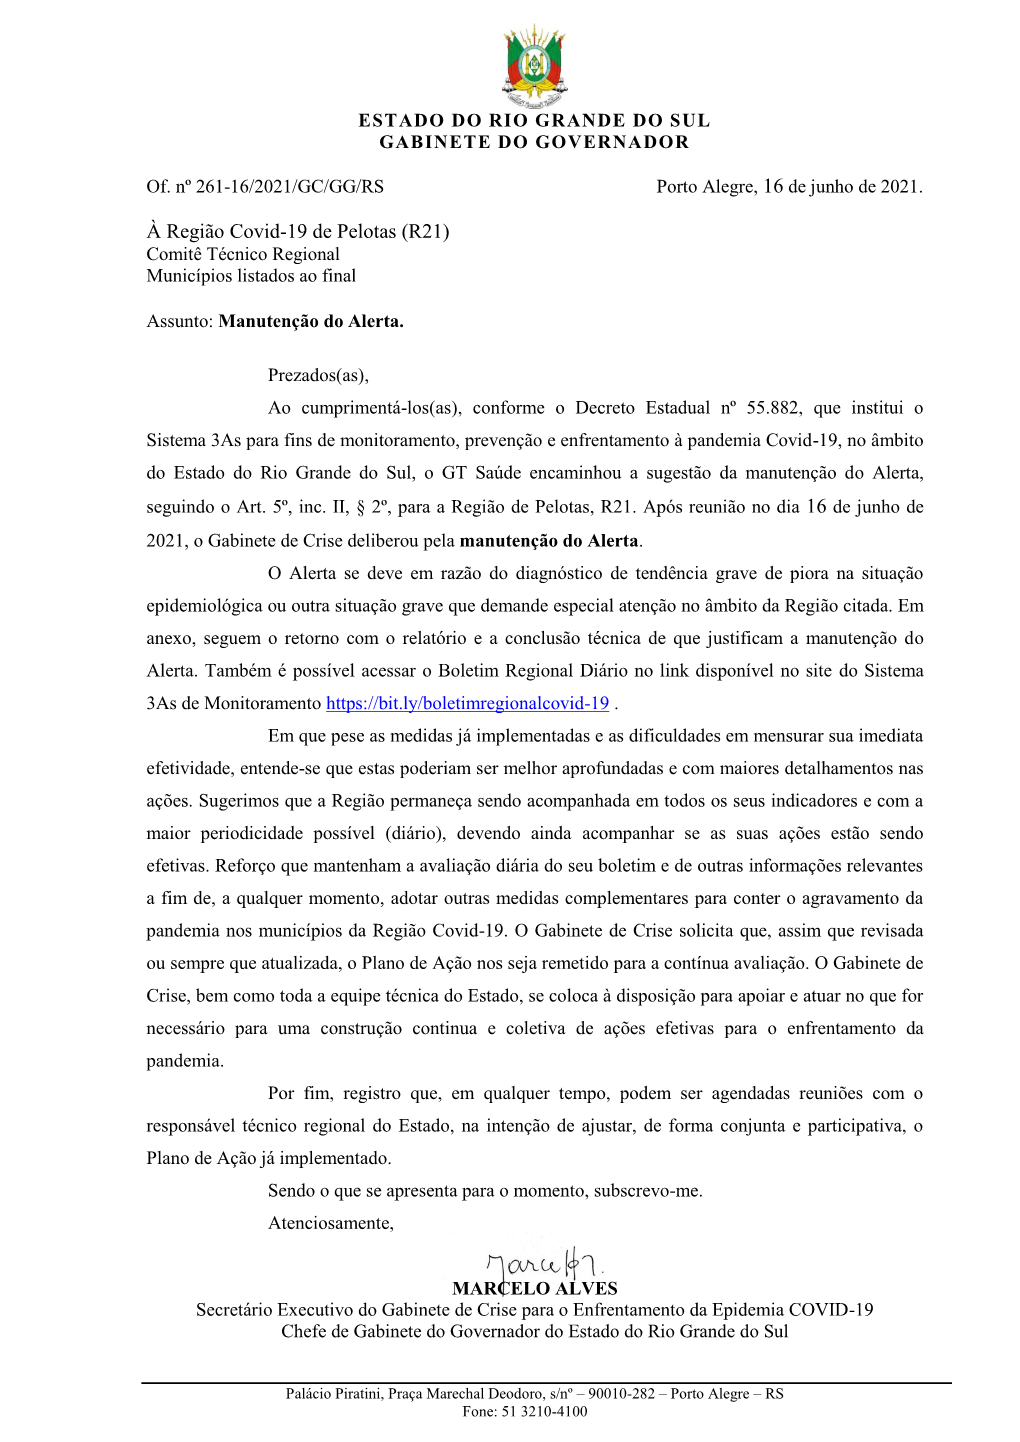 À Região Covid-19 De Pelotas (R21) Comitê Técnico Regional Municípios Listados Ao Final